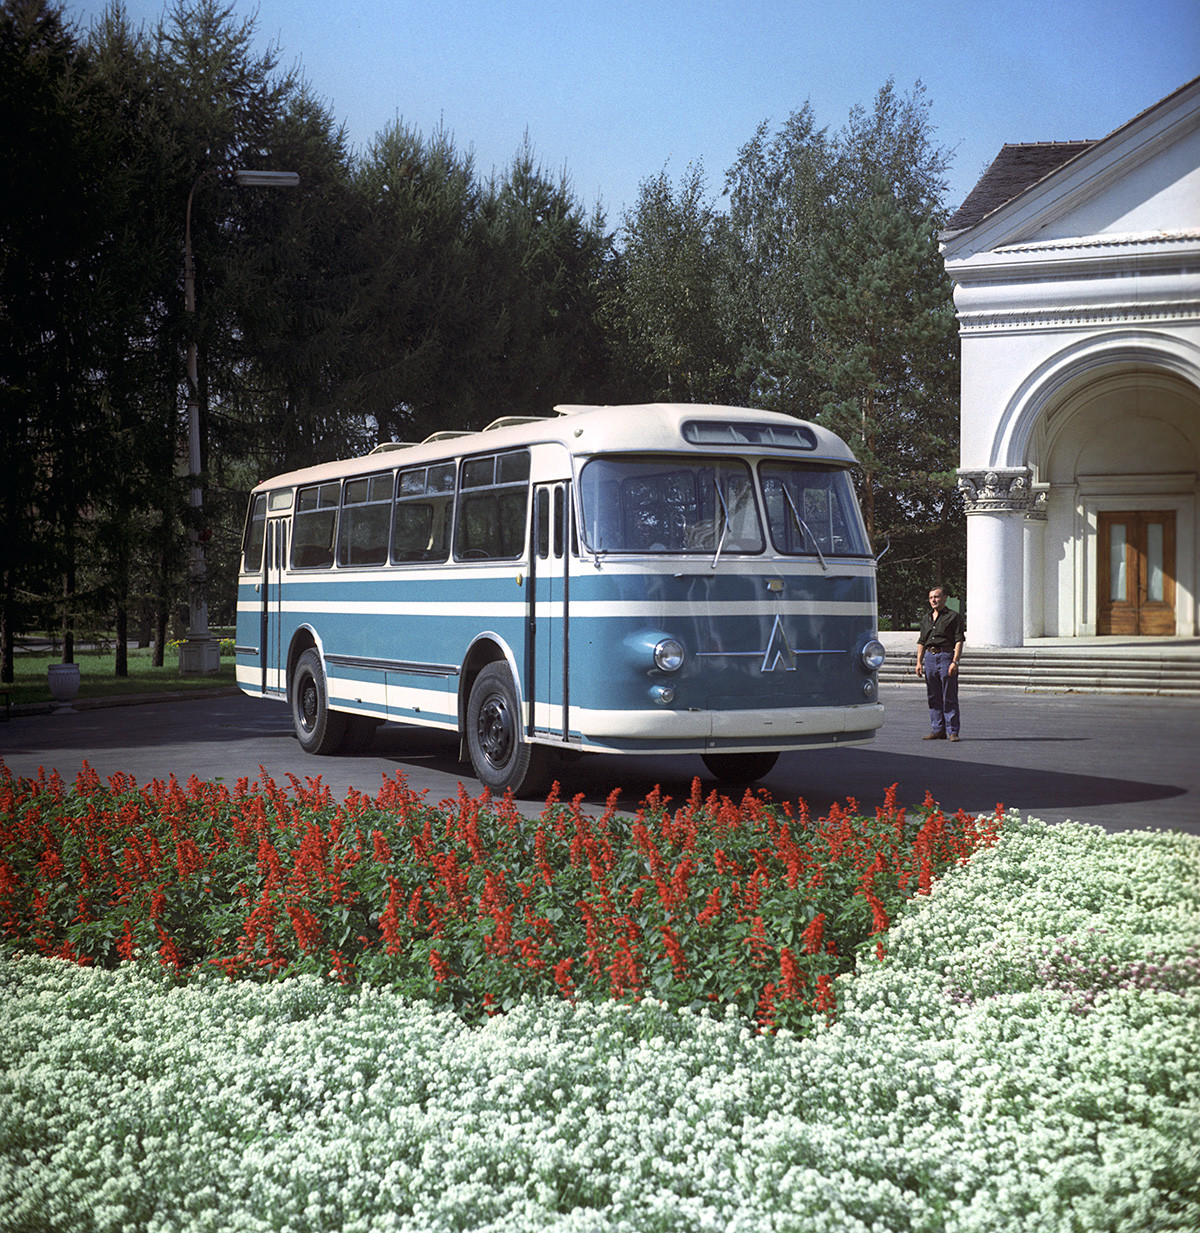 Sovjetski avtobus LAZ-697 iz Tovarne avtobusov v Lvovu, 1970